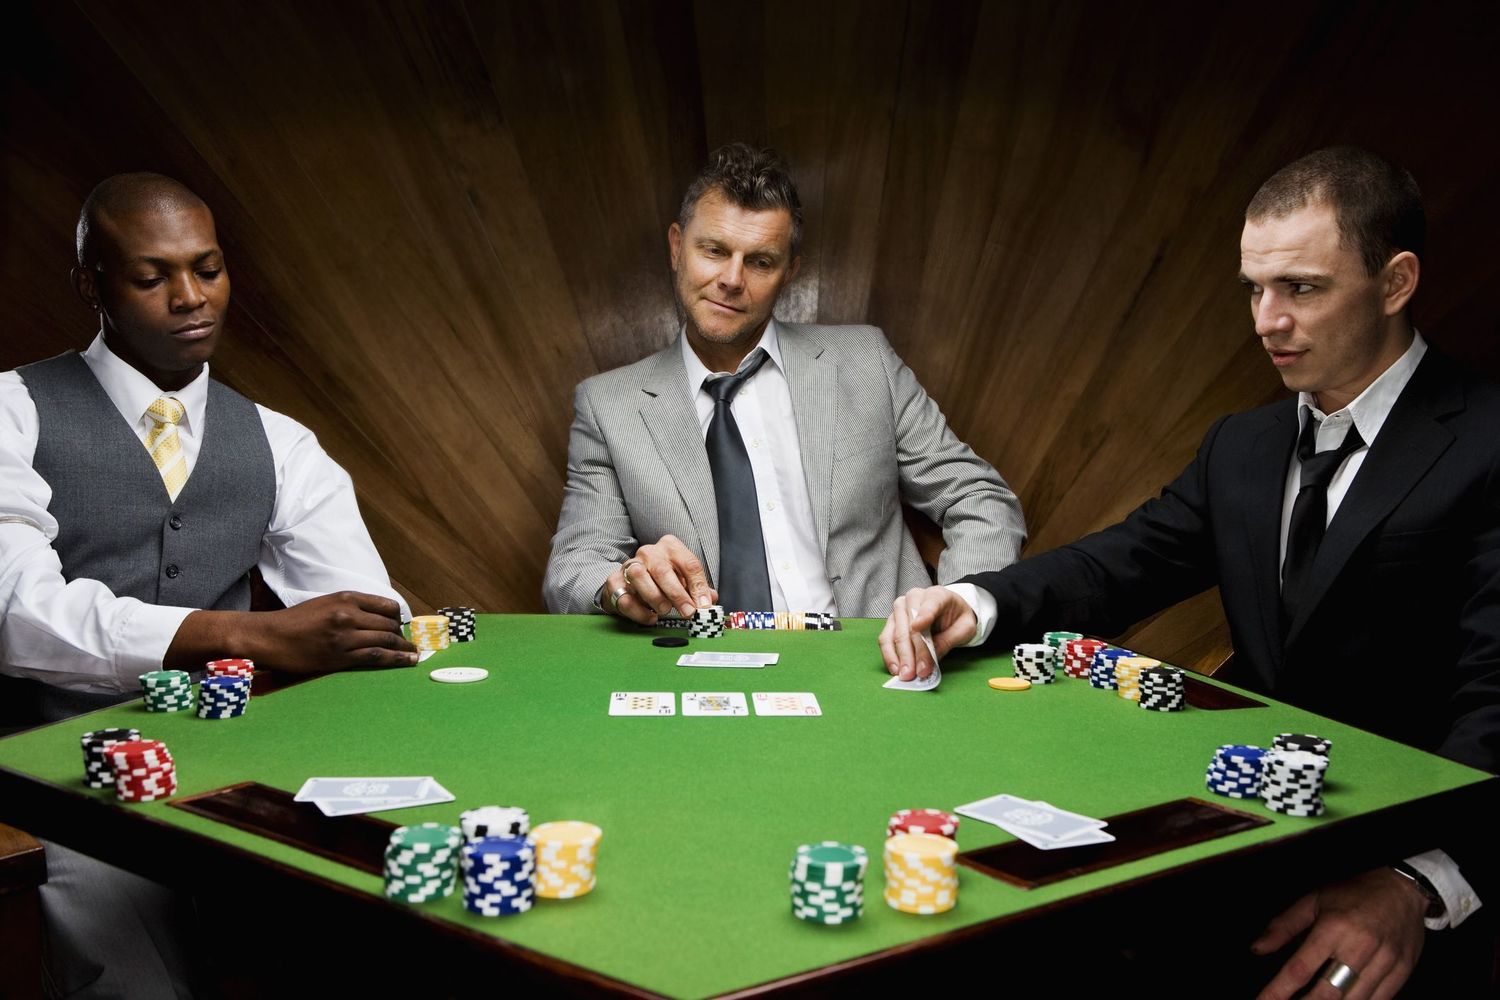 играть онлайн с другом в покер